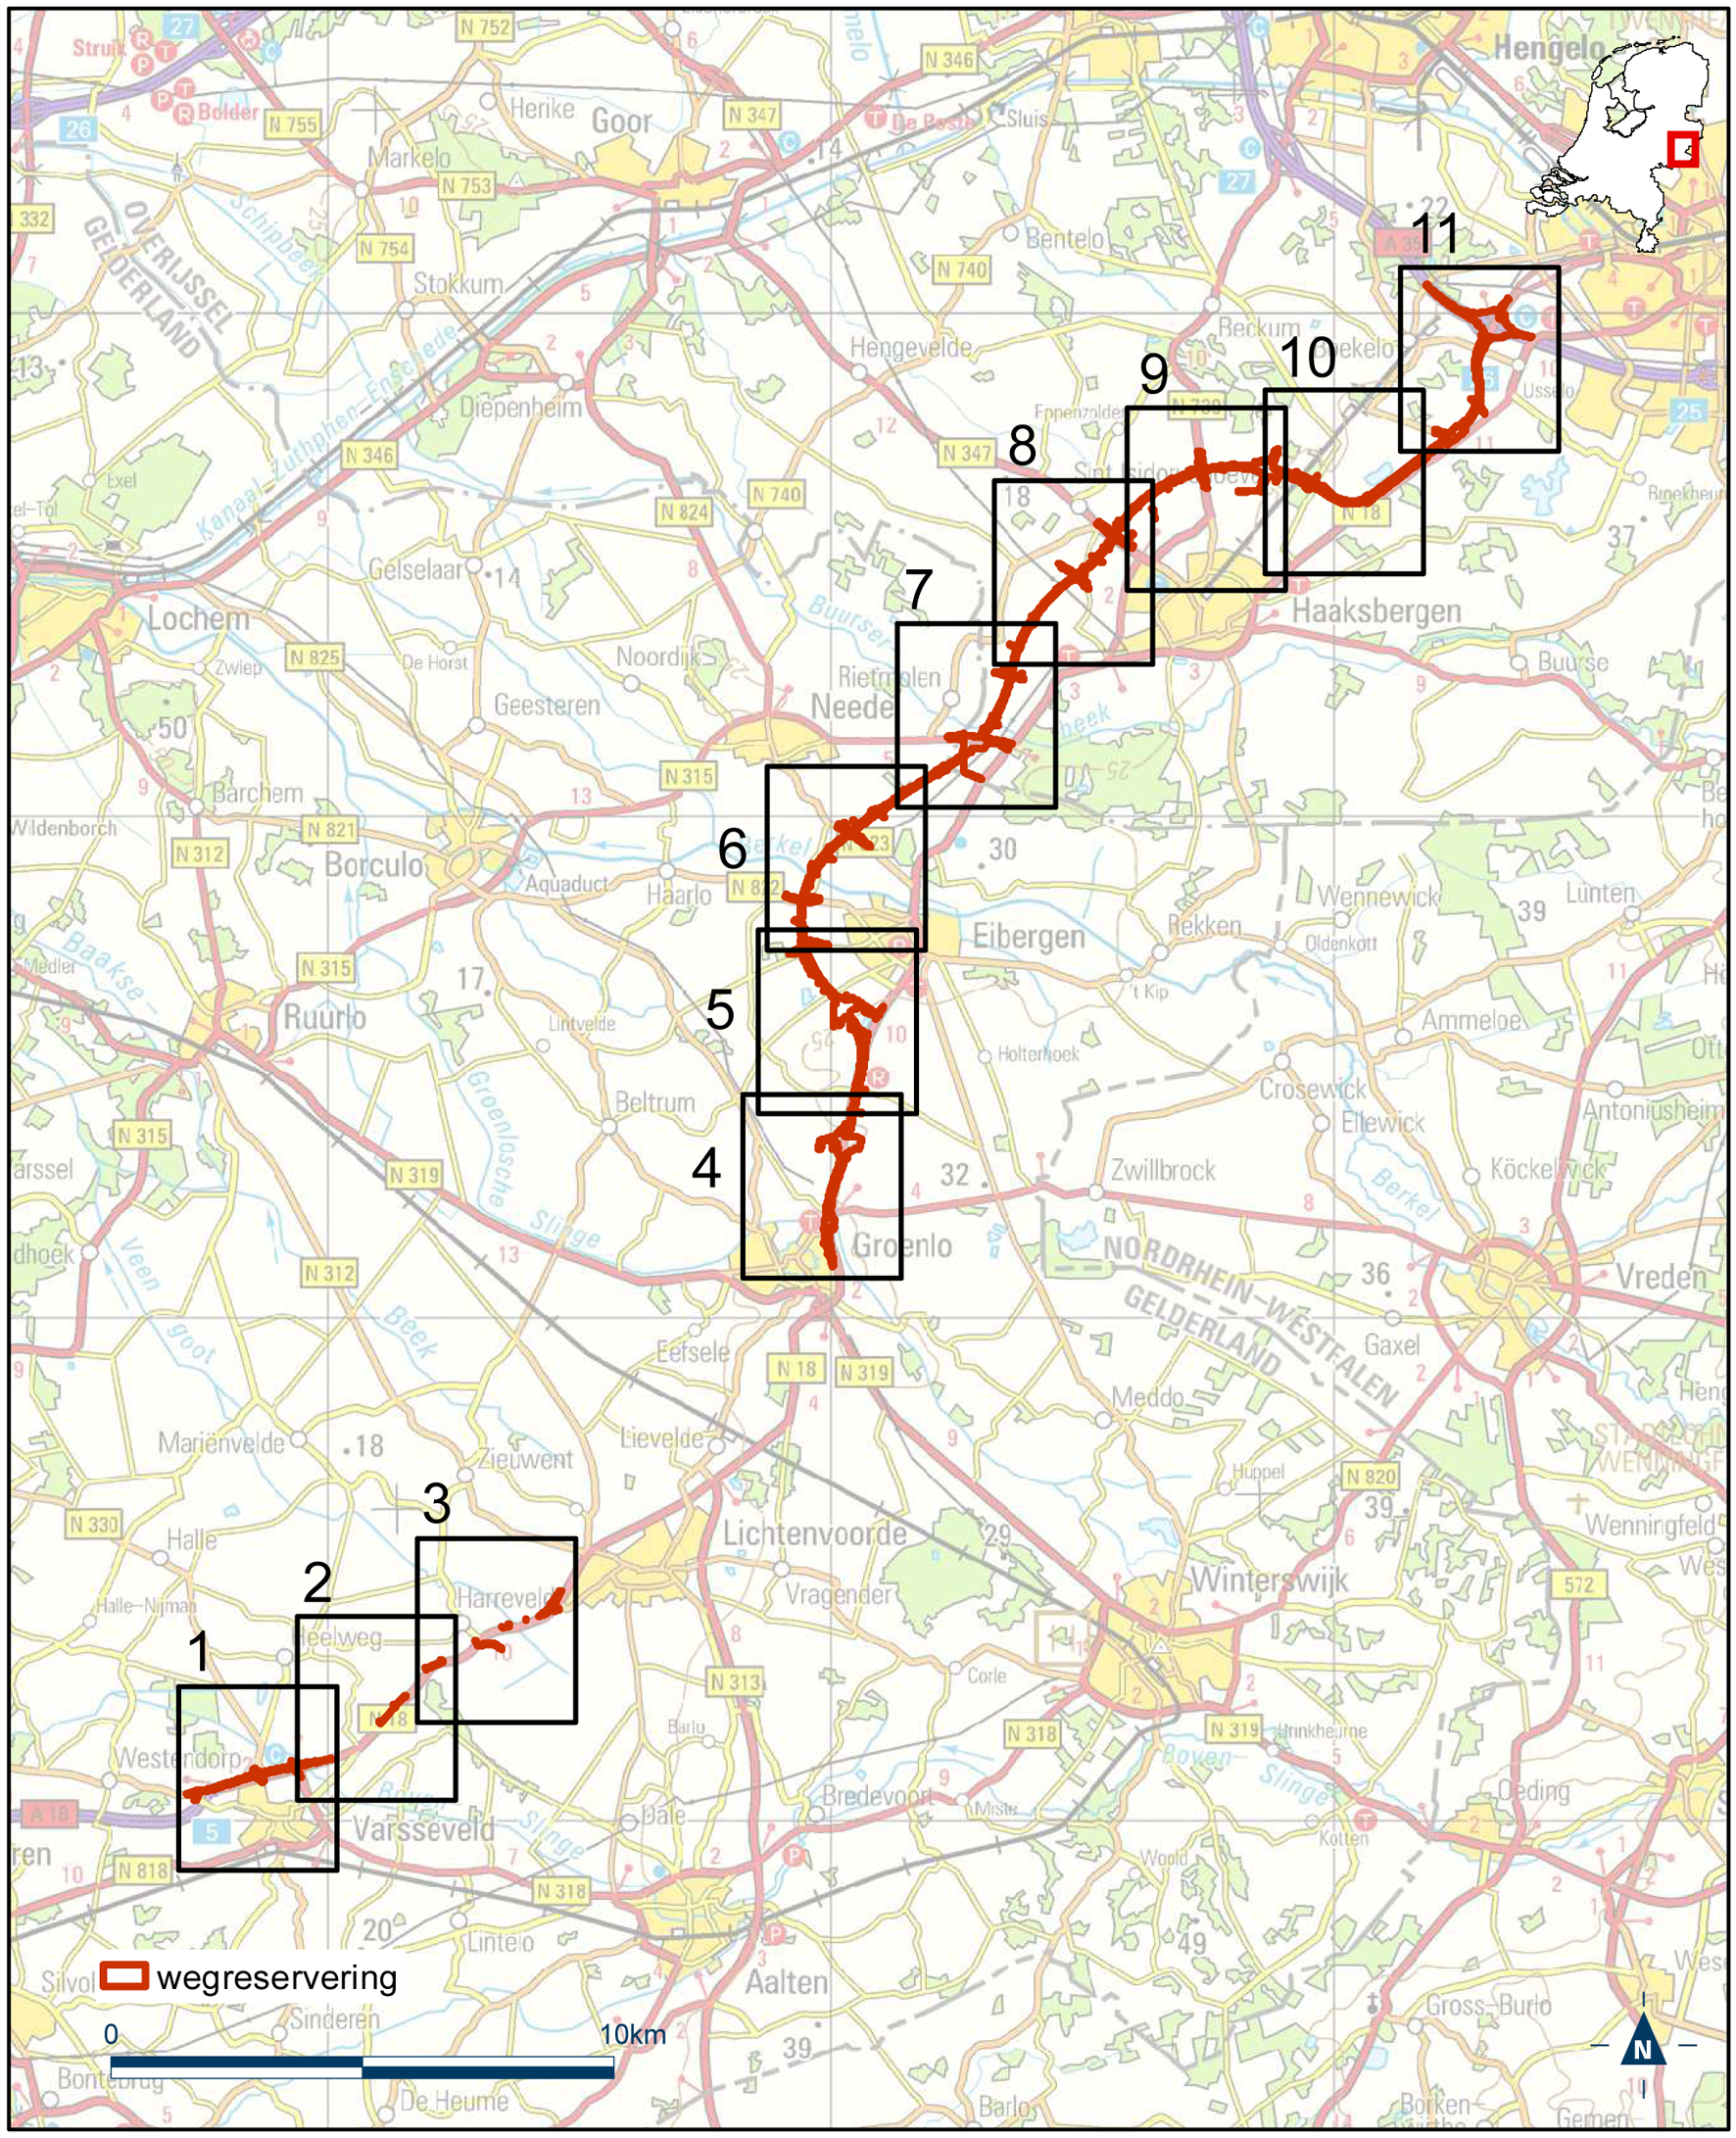 Overzichtskaart reserveringsgebied nieuwe hoofdweg N18 Varsseveld-Enschede